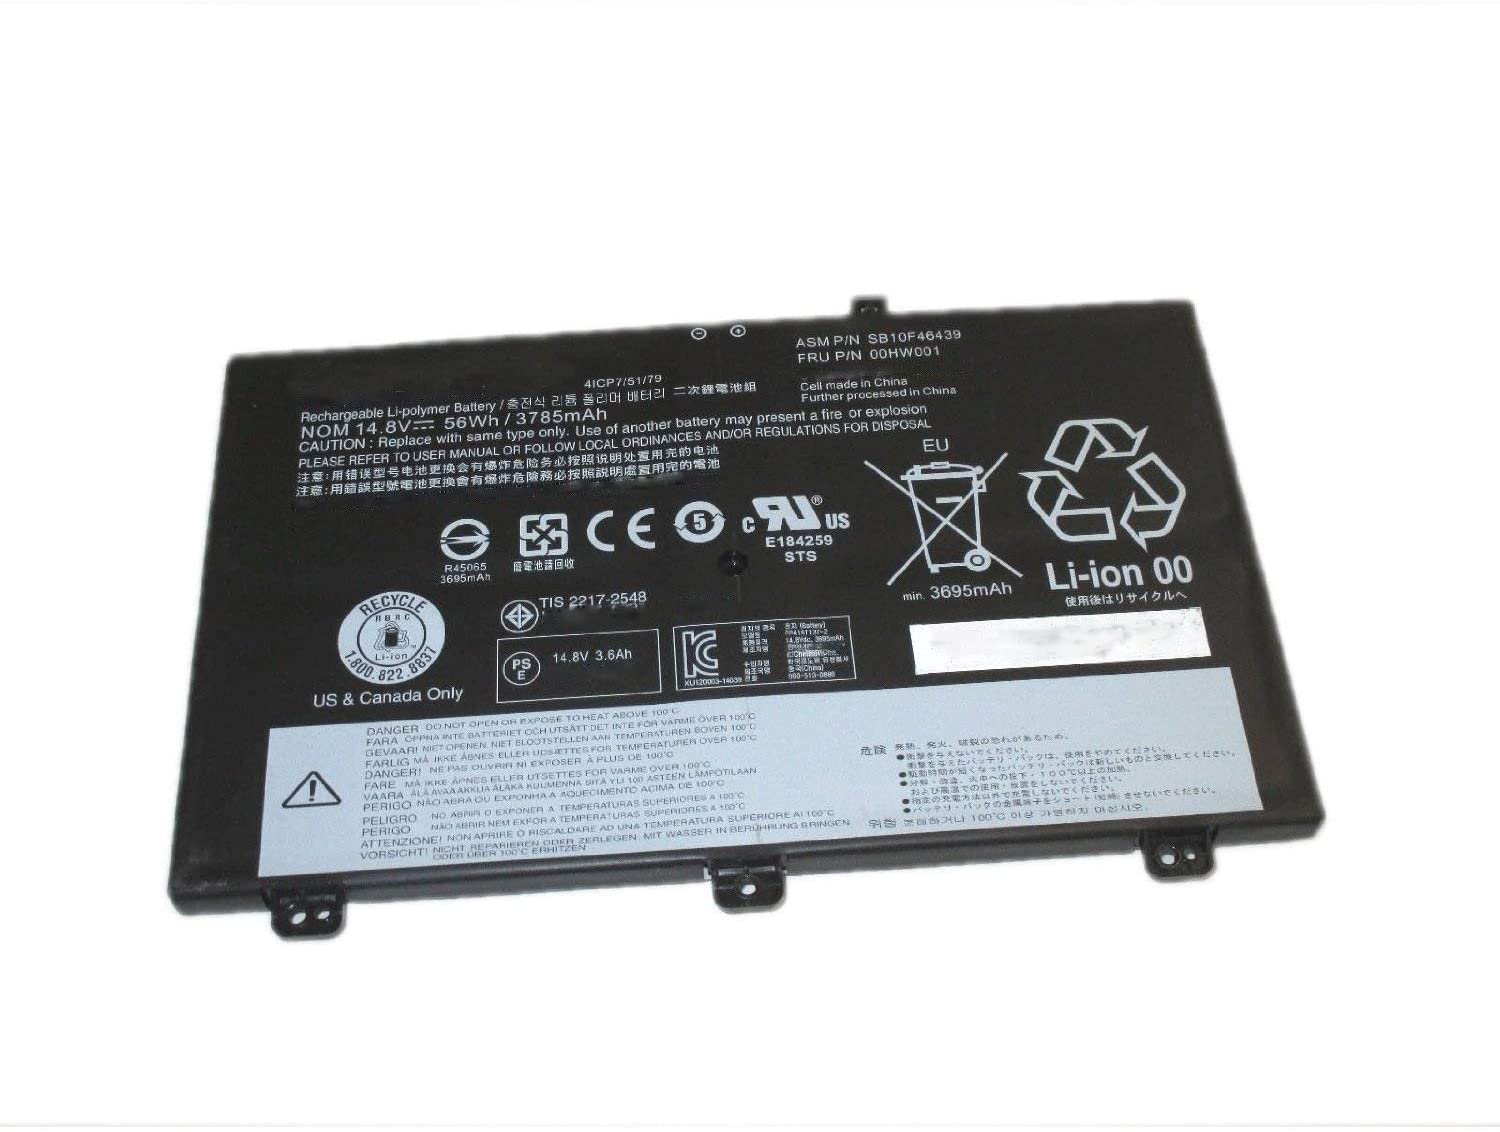 Lenovo ThinkPad T460s T470s 00HW024 00HW025 01AV405 01AV407 01AV406 kompatybilny bateria